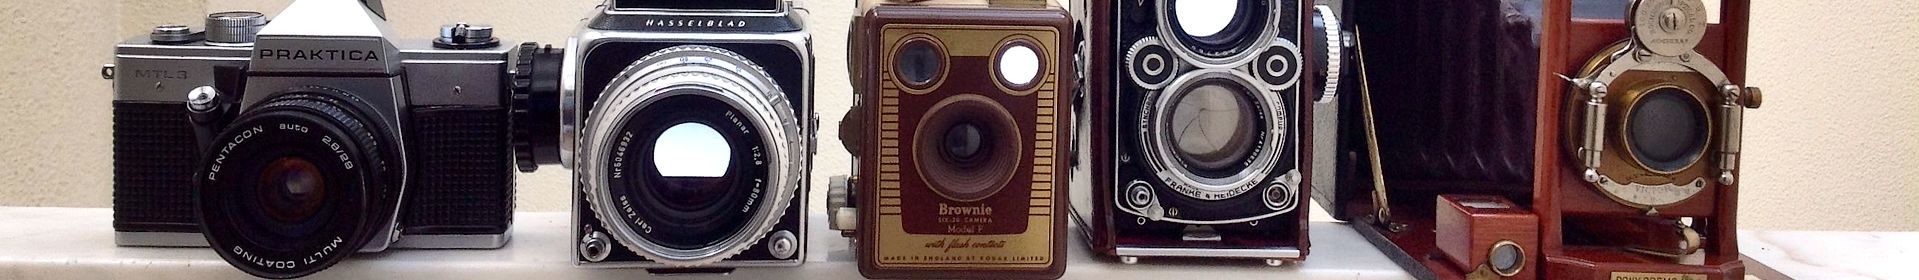 Antique camera equipment